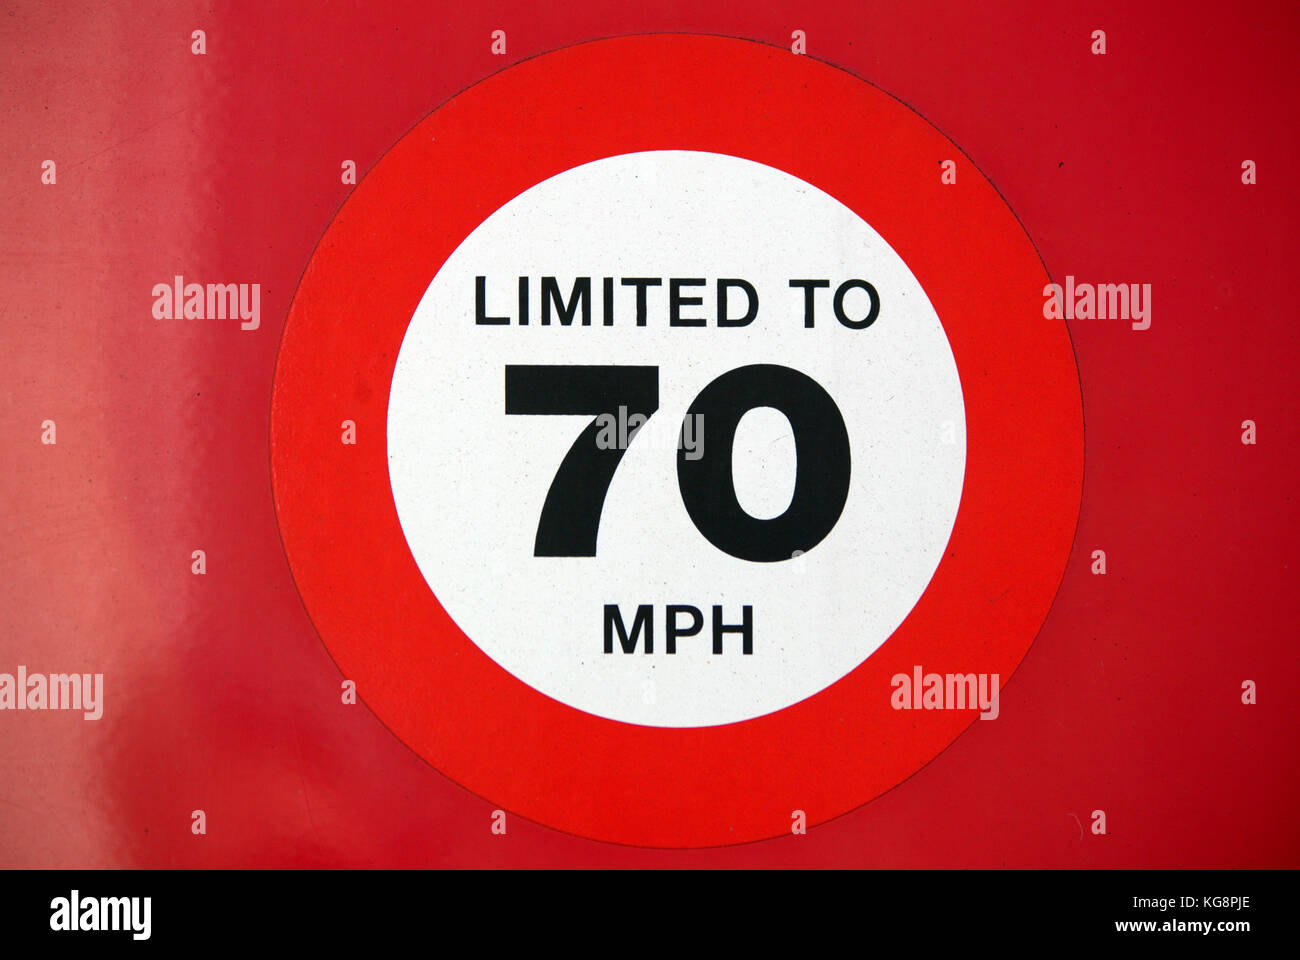 Red limitata a 70 mph velocità segno adesivo sul veicolo automobile furgone carrello Foto Stock